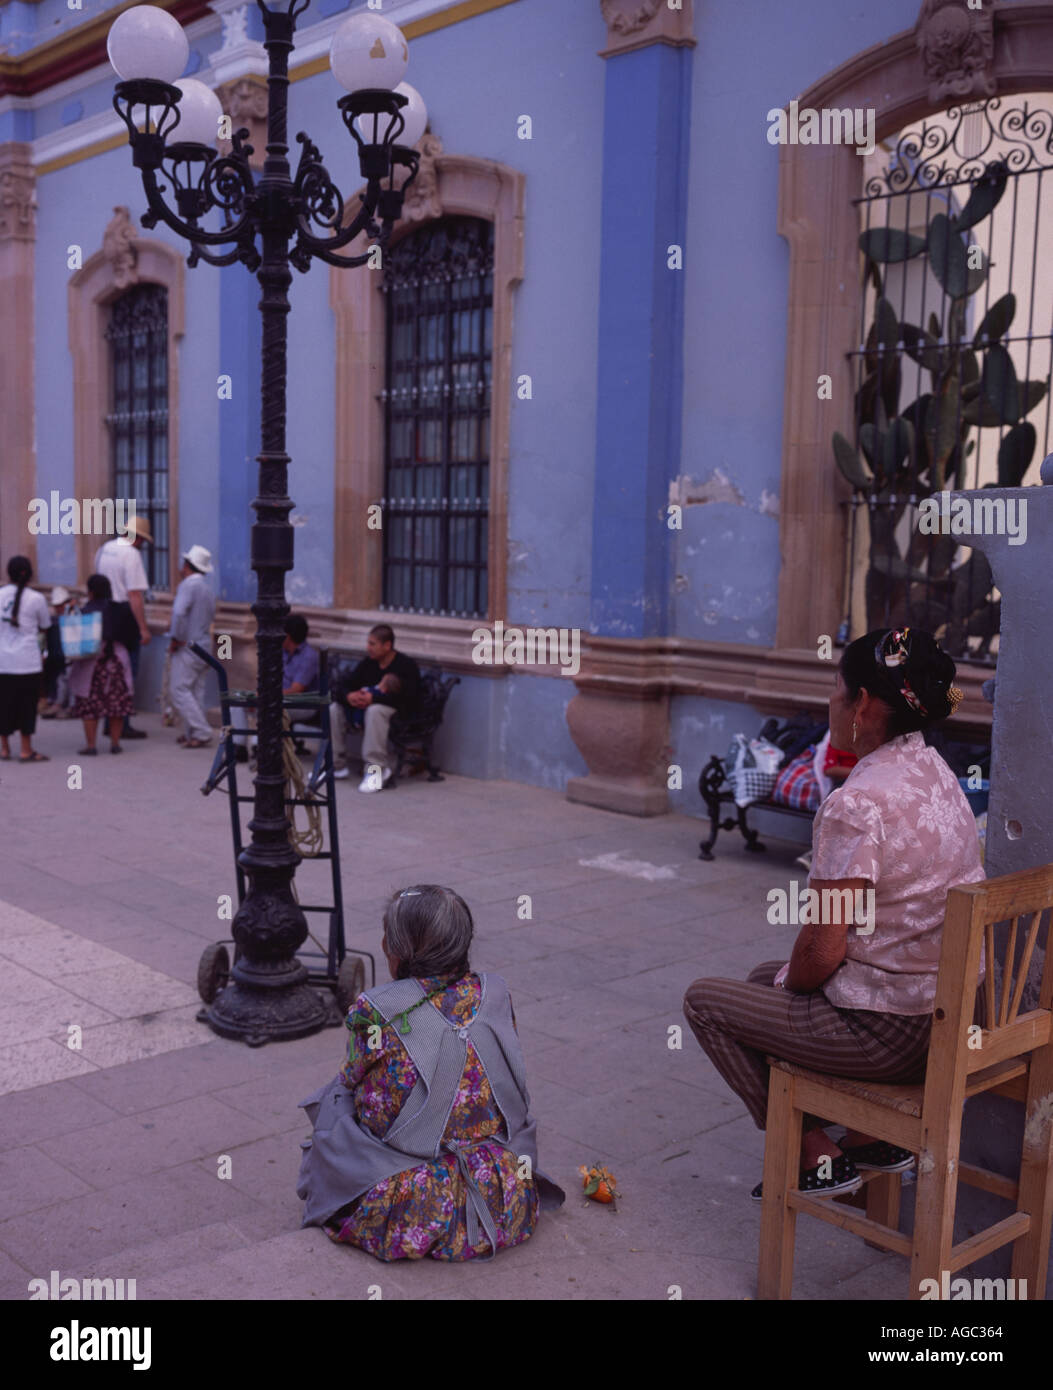 Local people sitting outside the church Ocotlán de Morelos, Oaxaca Mexico Stock Photo